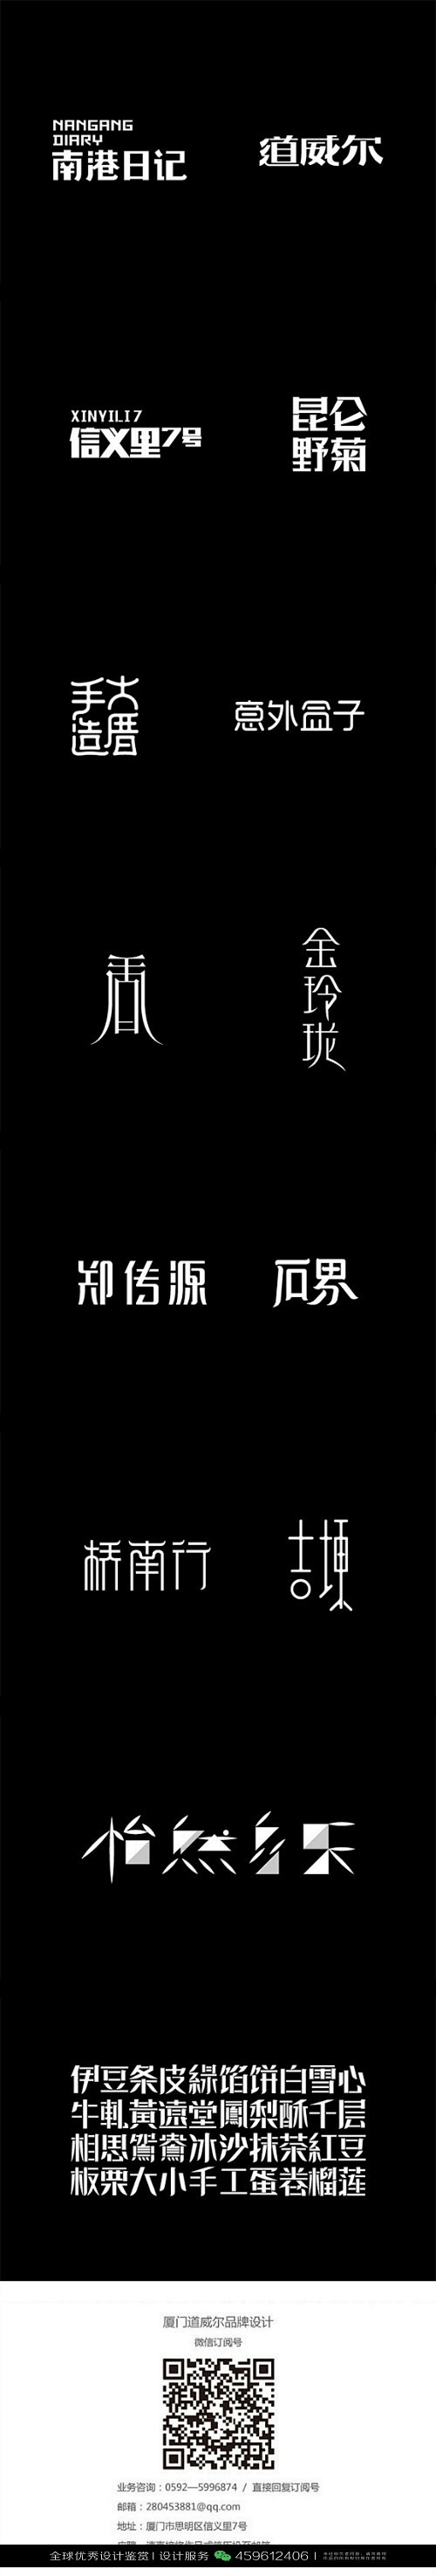 字体设计汉字中文优秀LOGO设计标志品牌...